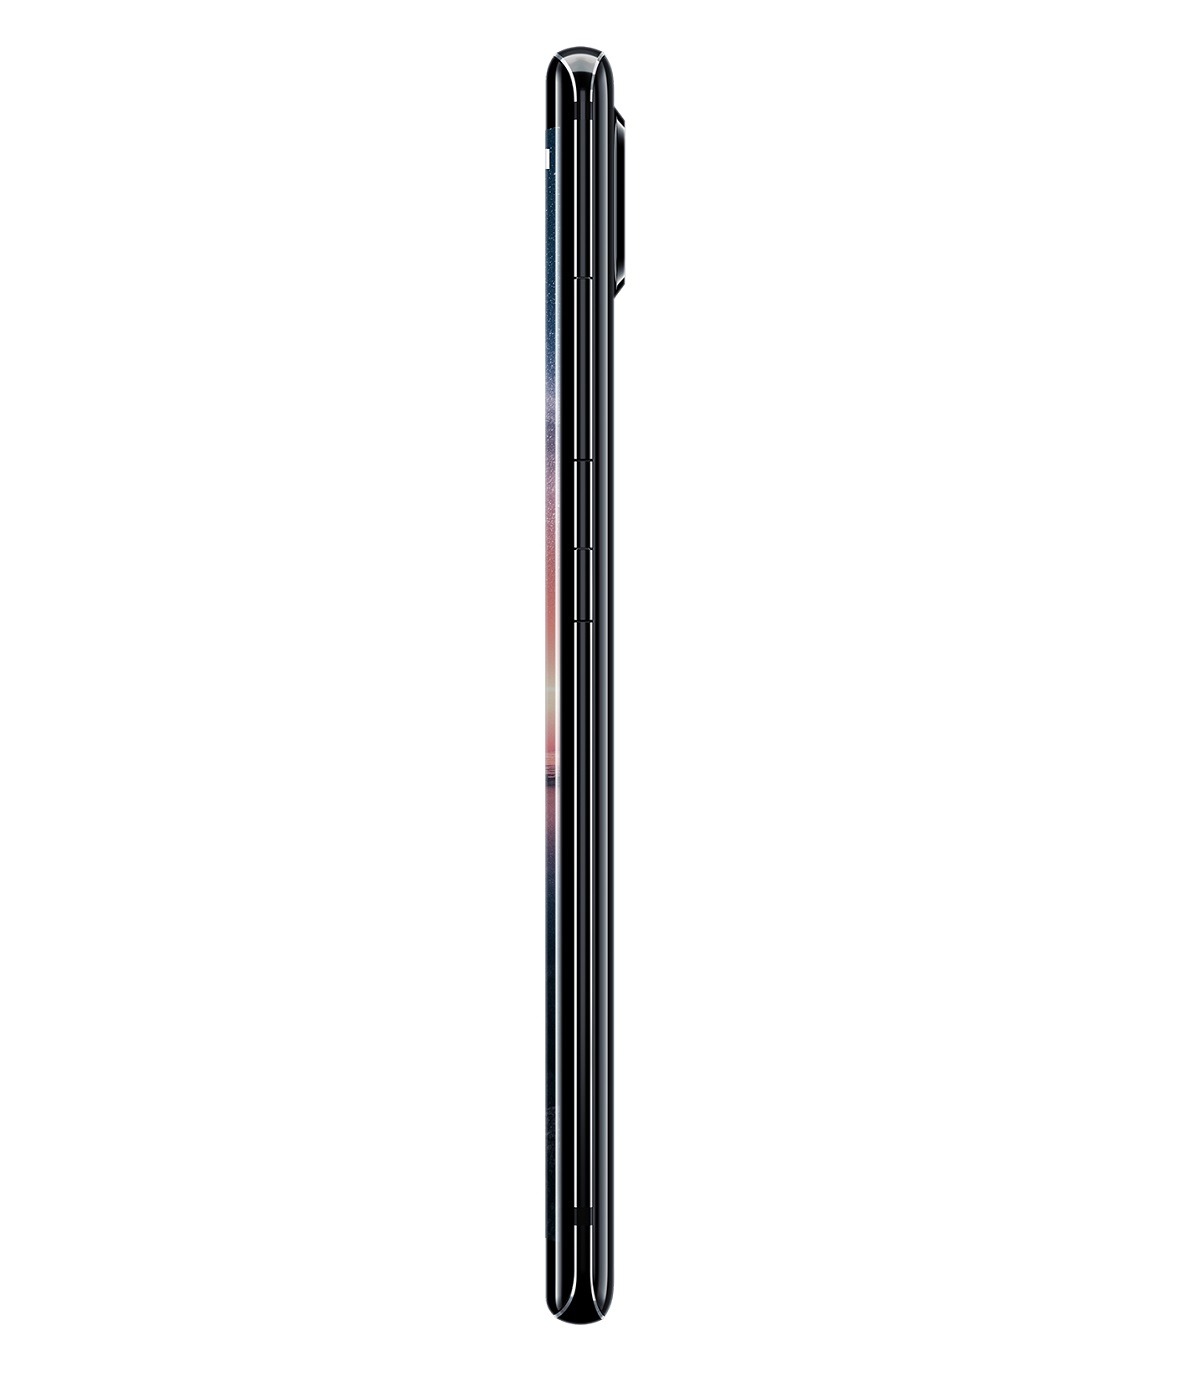 Nokia 8 Sirocco, móvil con pantalla curva y cámara doble 2